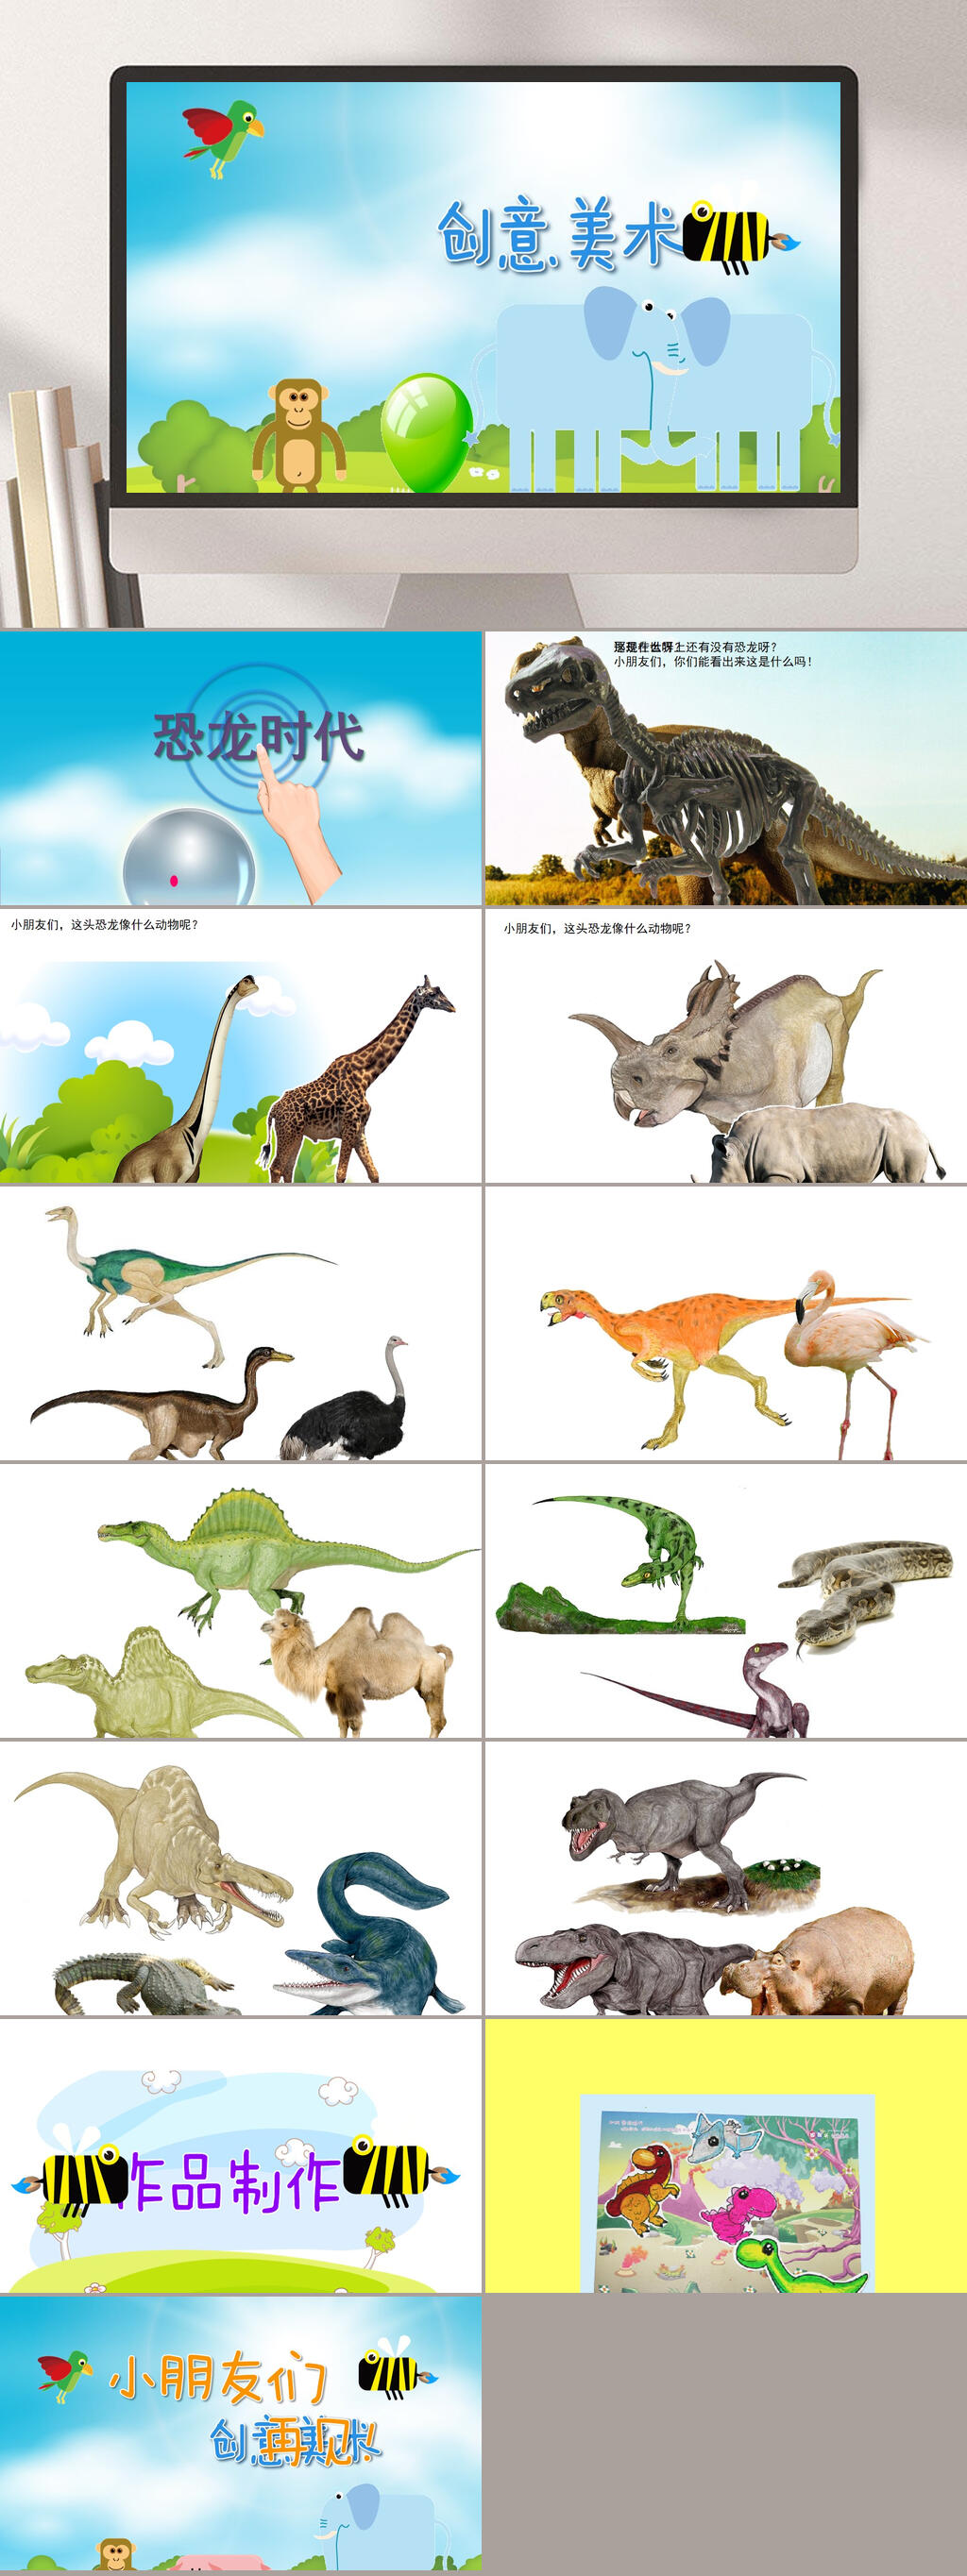 恐龙时期ppt图片